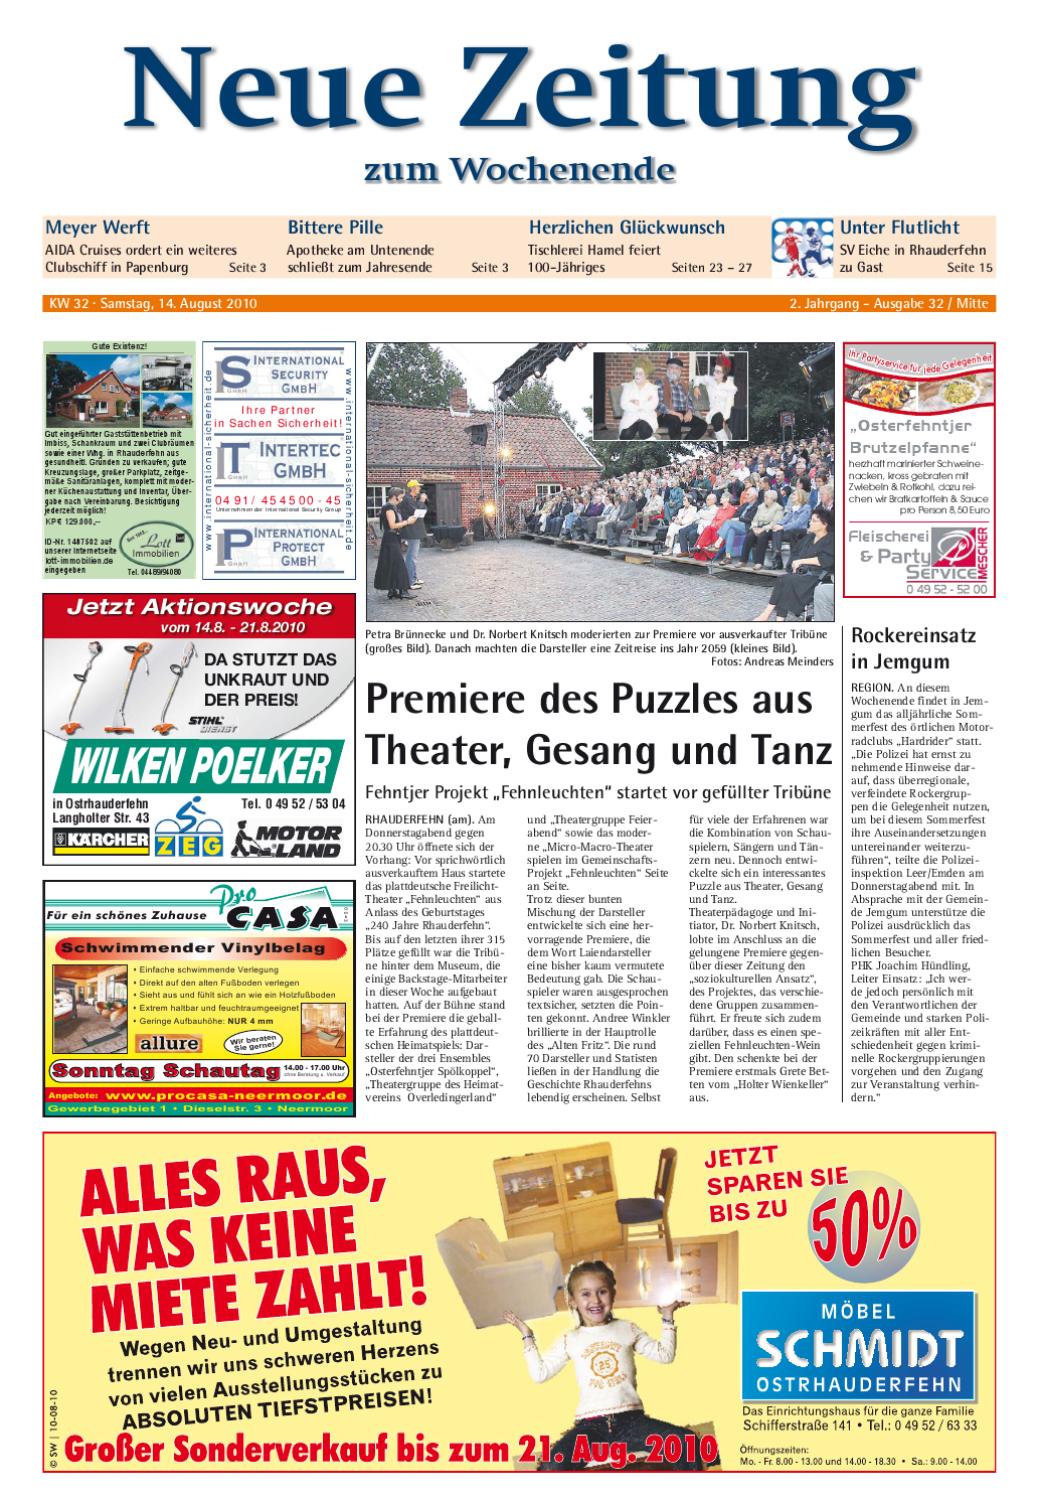 Weinlaube Selber Bauen Einzigartig Neue Zeitung Ausgabe Mitte Kw 32 by Gerhard Verlag Gmbh